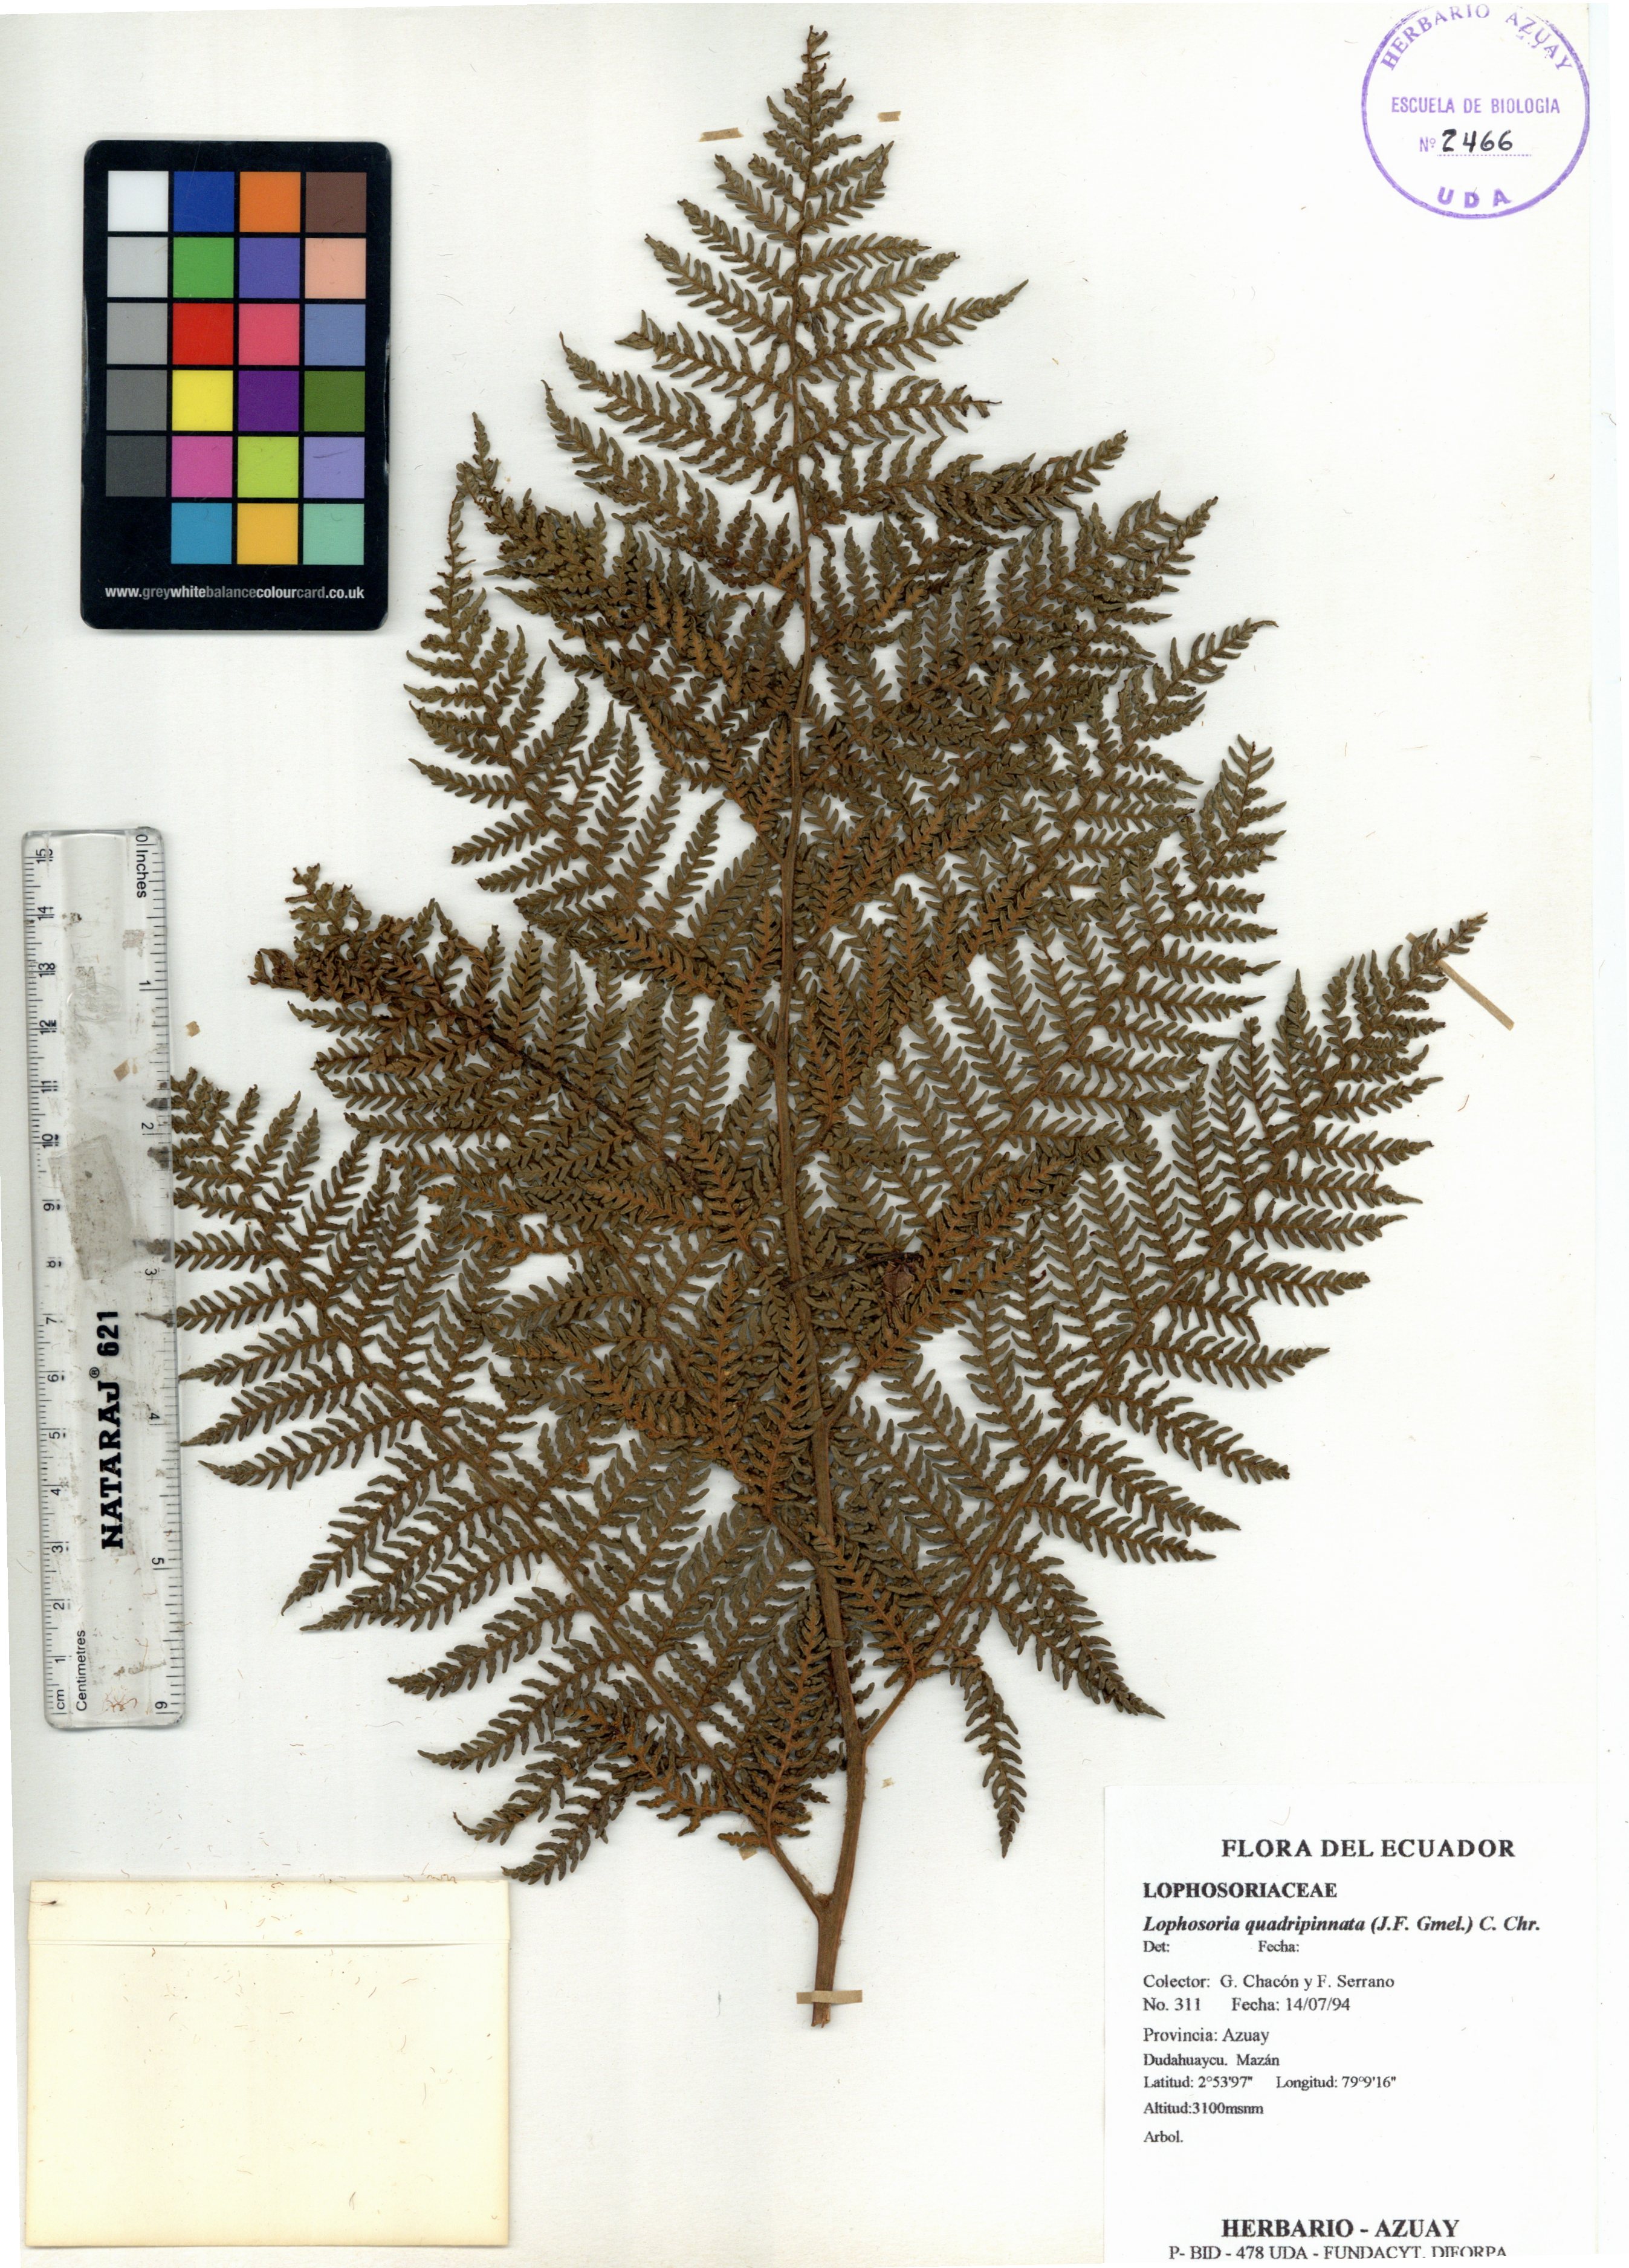 Lophosoria quadripinnata (J.F. Gmel.) C. Chr.